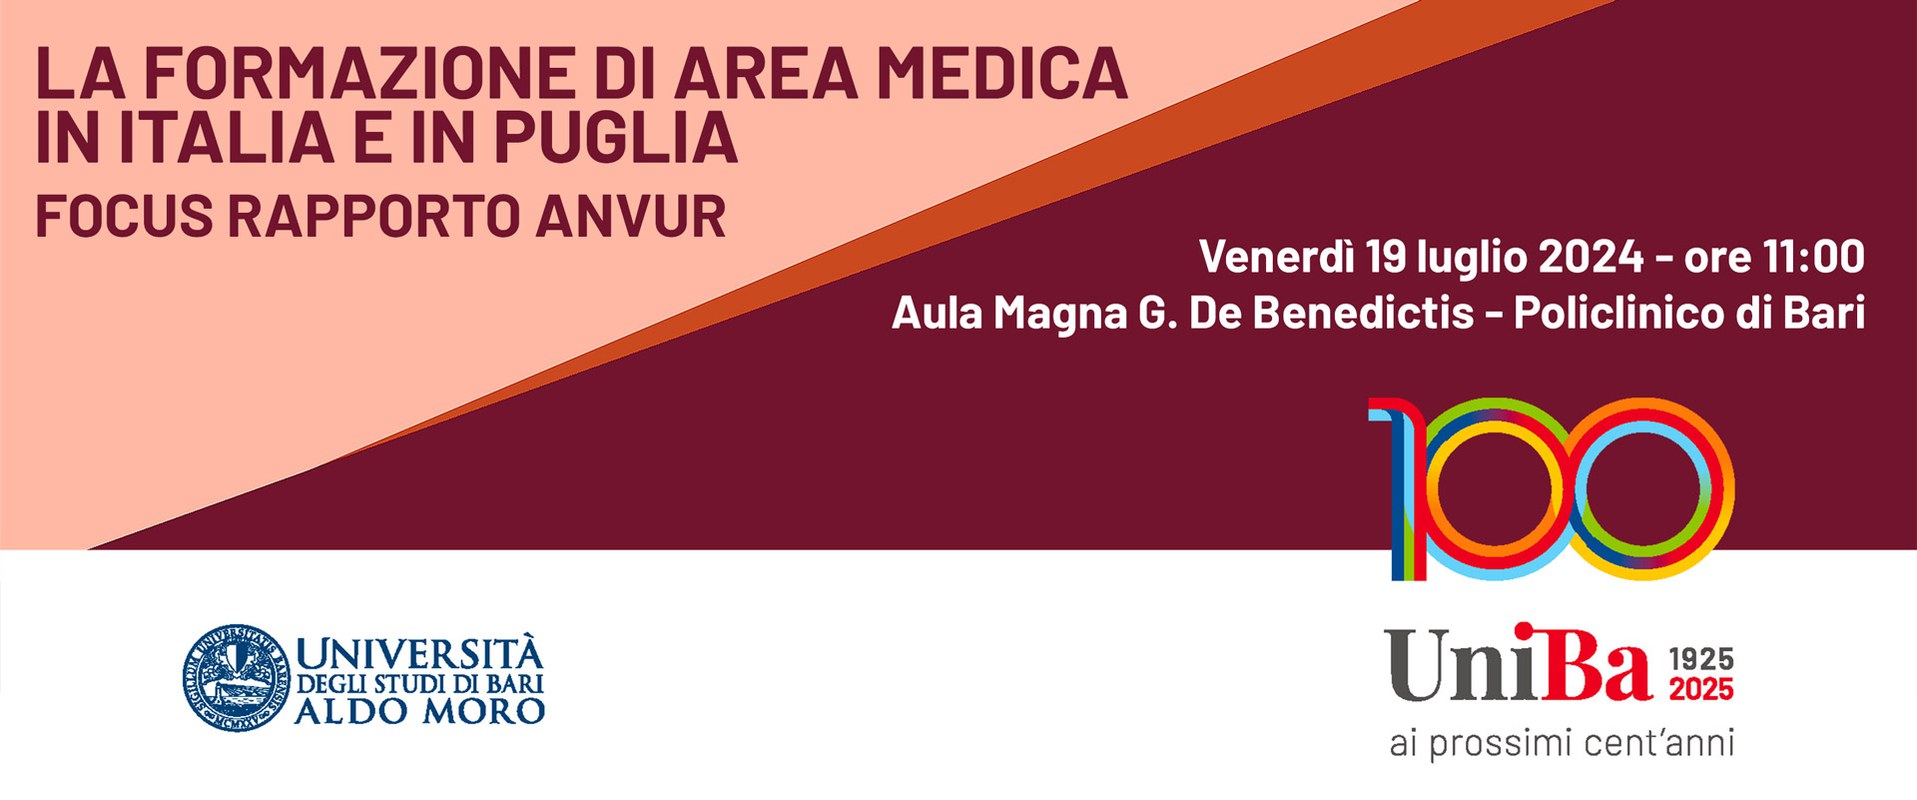 La formazione di area medica in Italia e in Puglia